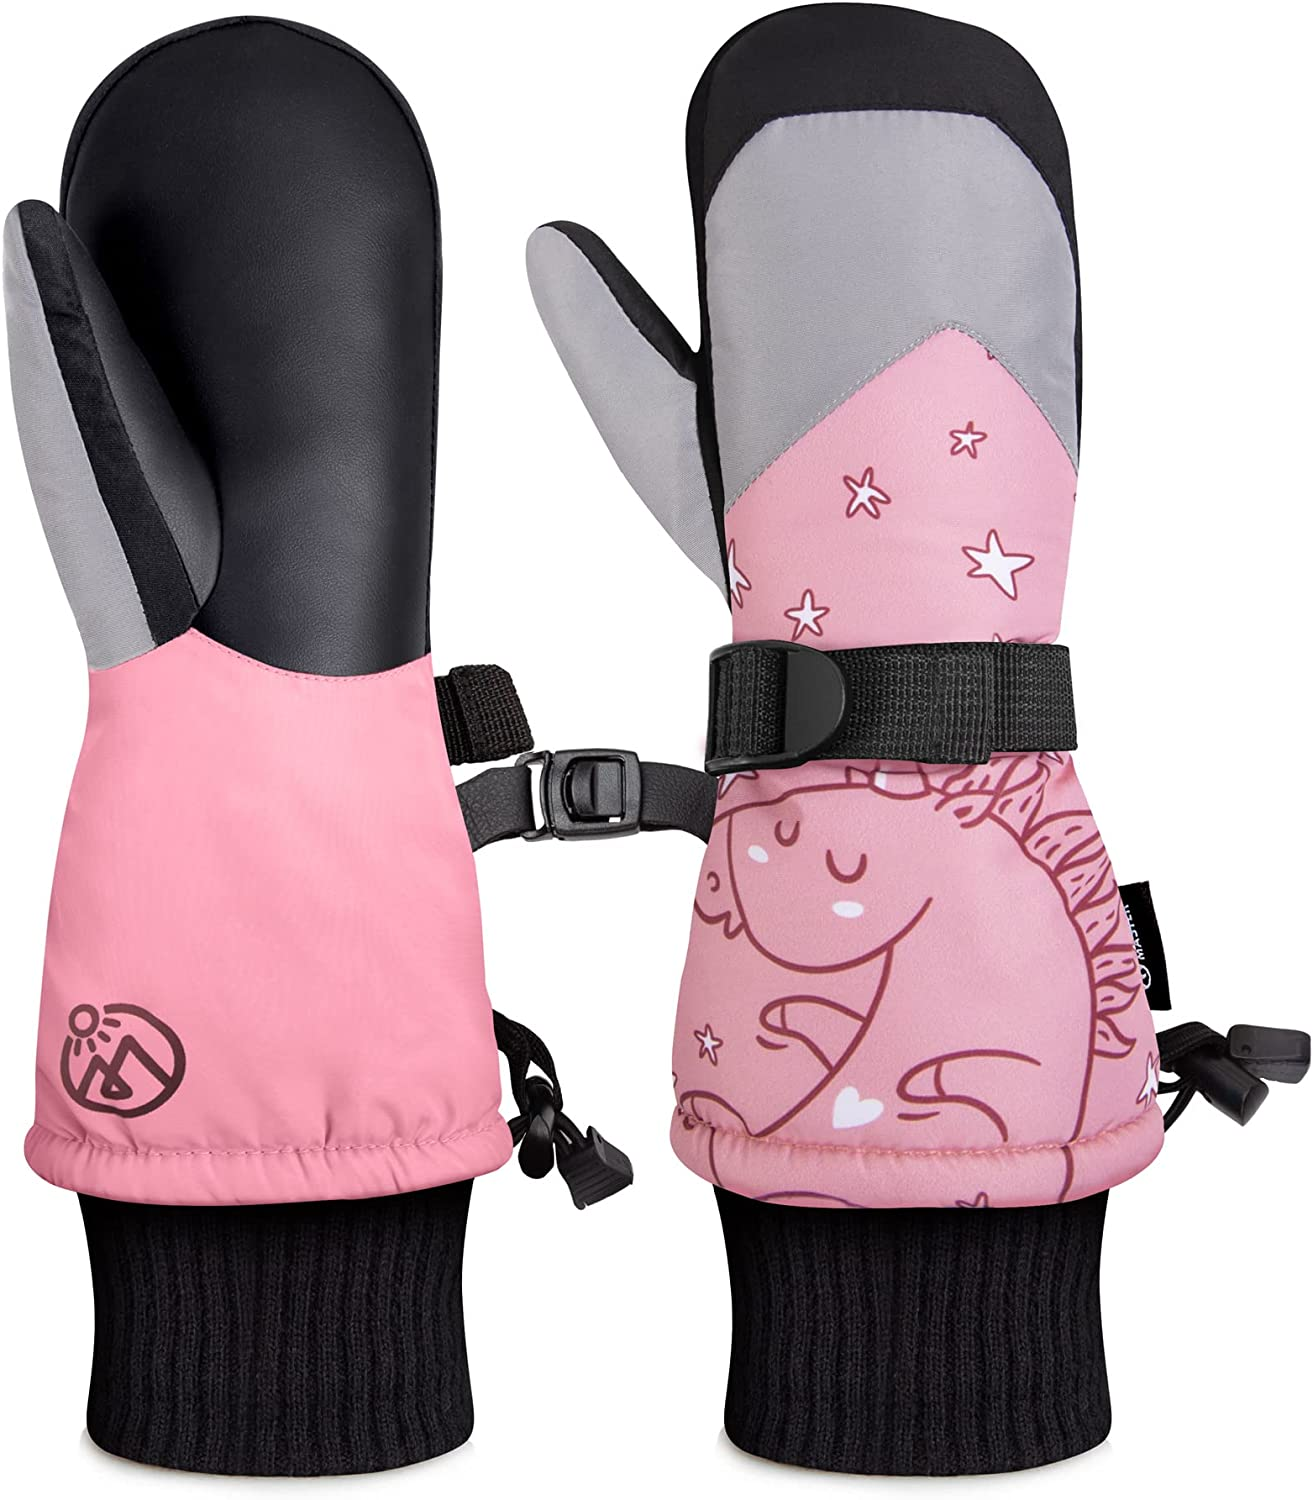 Amazon.com : OutdoorMaster Kids Ski Gloves, Kids Ski Mittens Long Cuff Waterproof Winter Gloves, Snow Gloves for Children $7.99